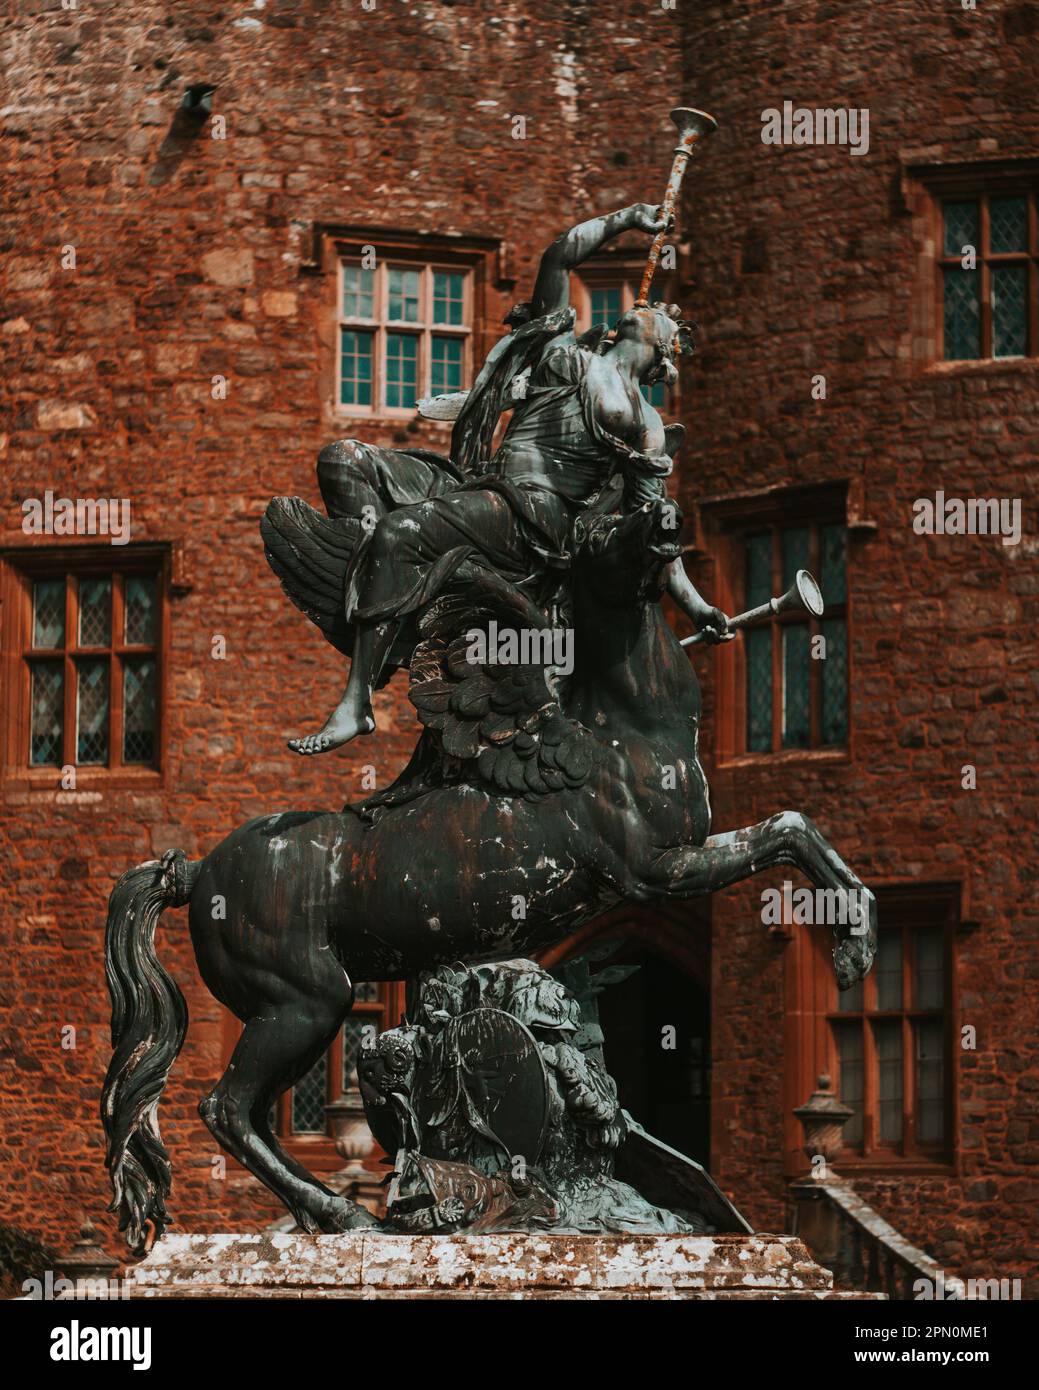 Statua di fama nel cortile d'ingresso del castello di Powis Foto Stock